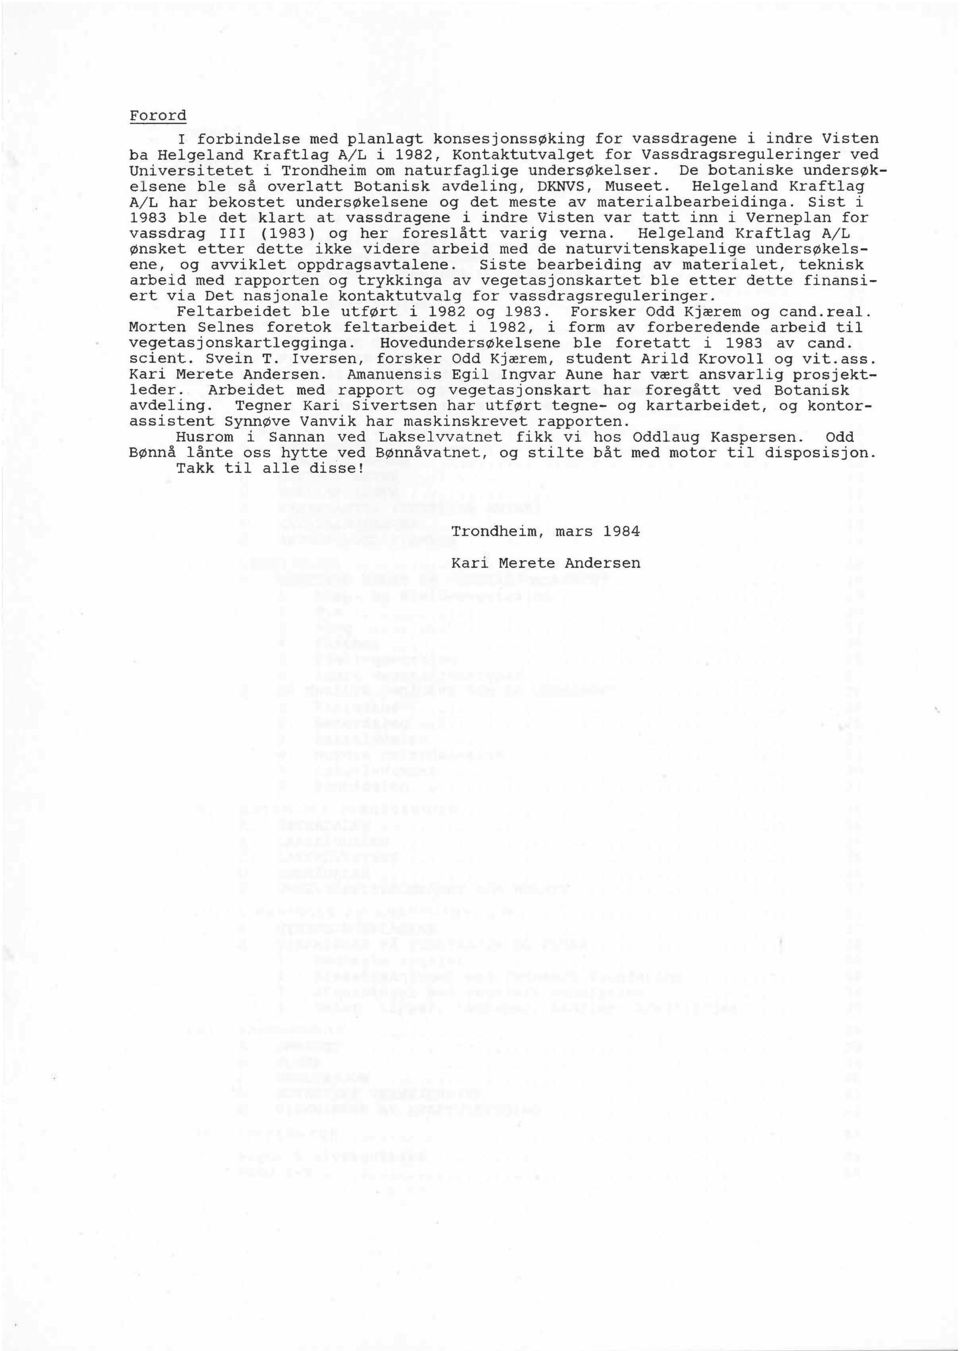 Sist i 1983 ble det klart at vassdragene i indre Visten var tatt inn i Verneplan for vassdrag I11 (1983) og her foreslått varig verna.